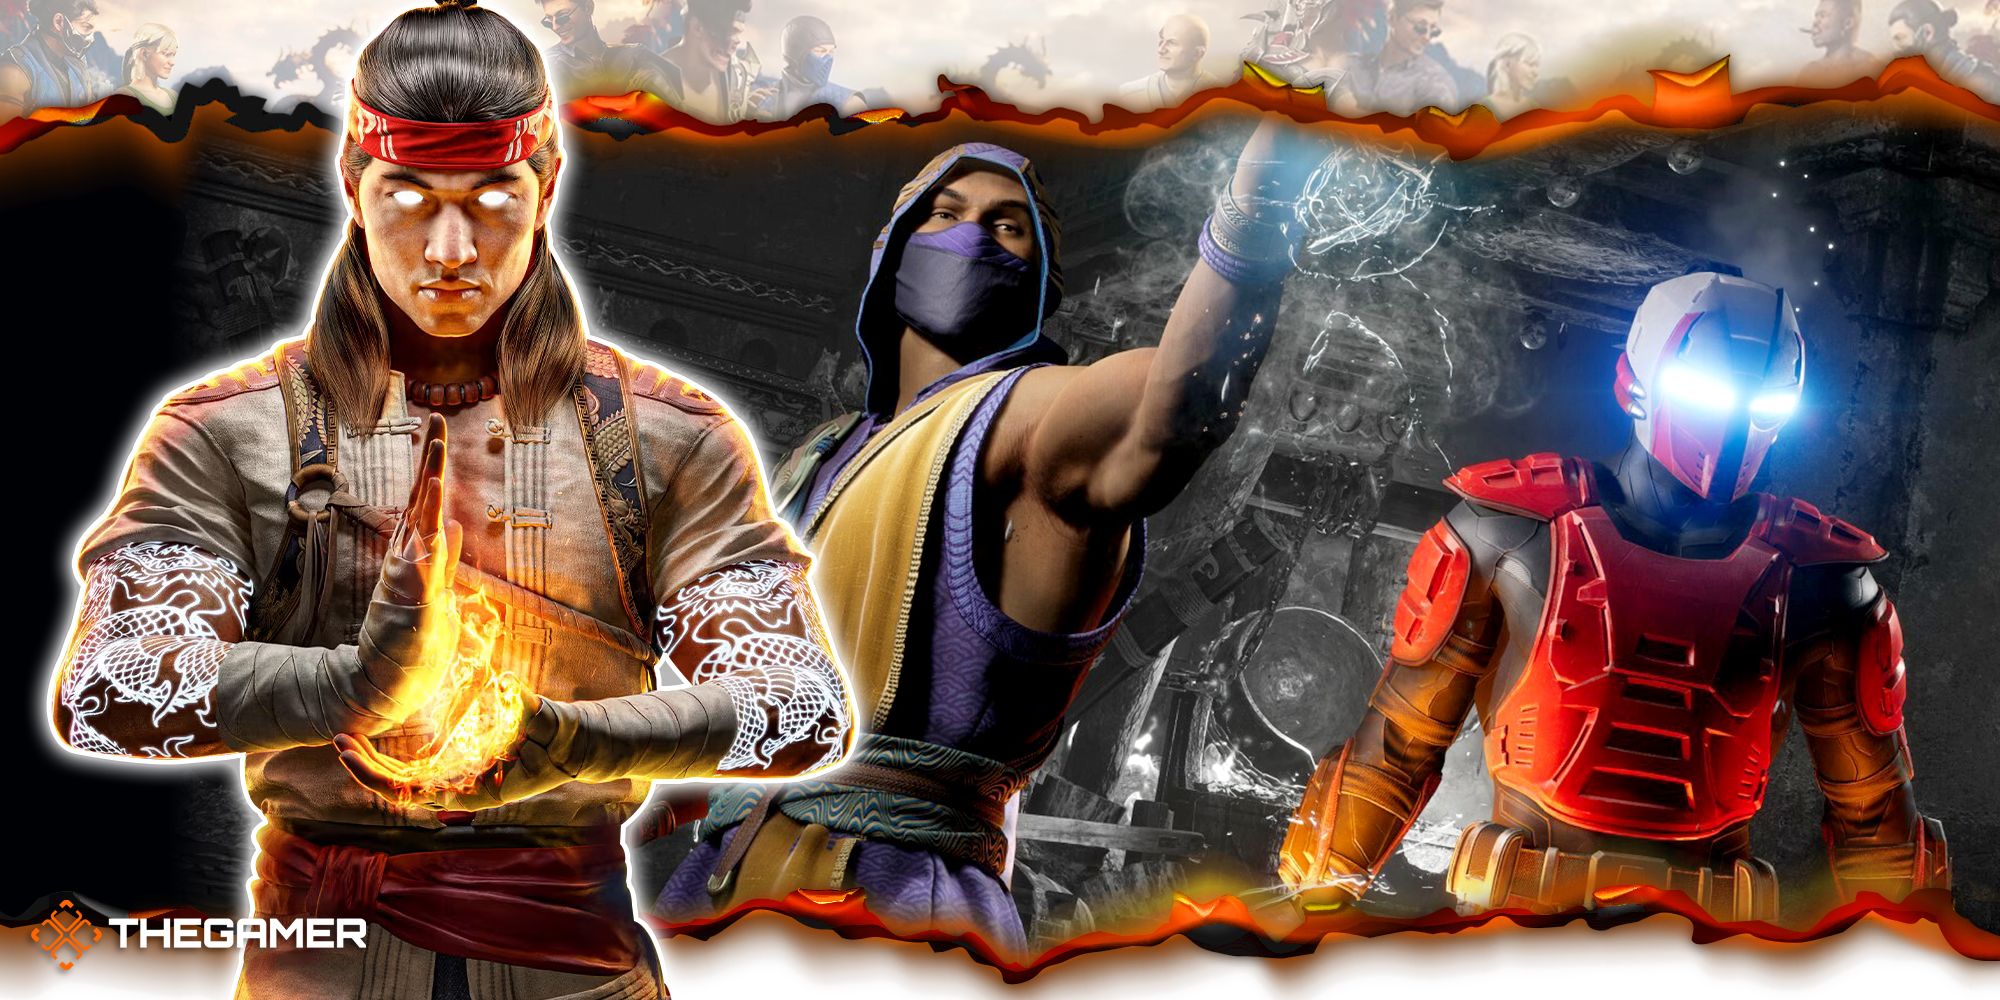 Kombat League Guide – Mortal Kombat Games